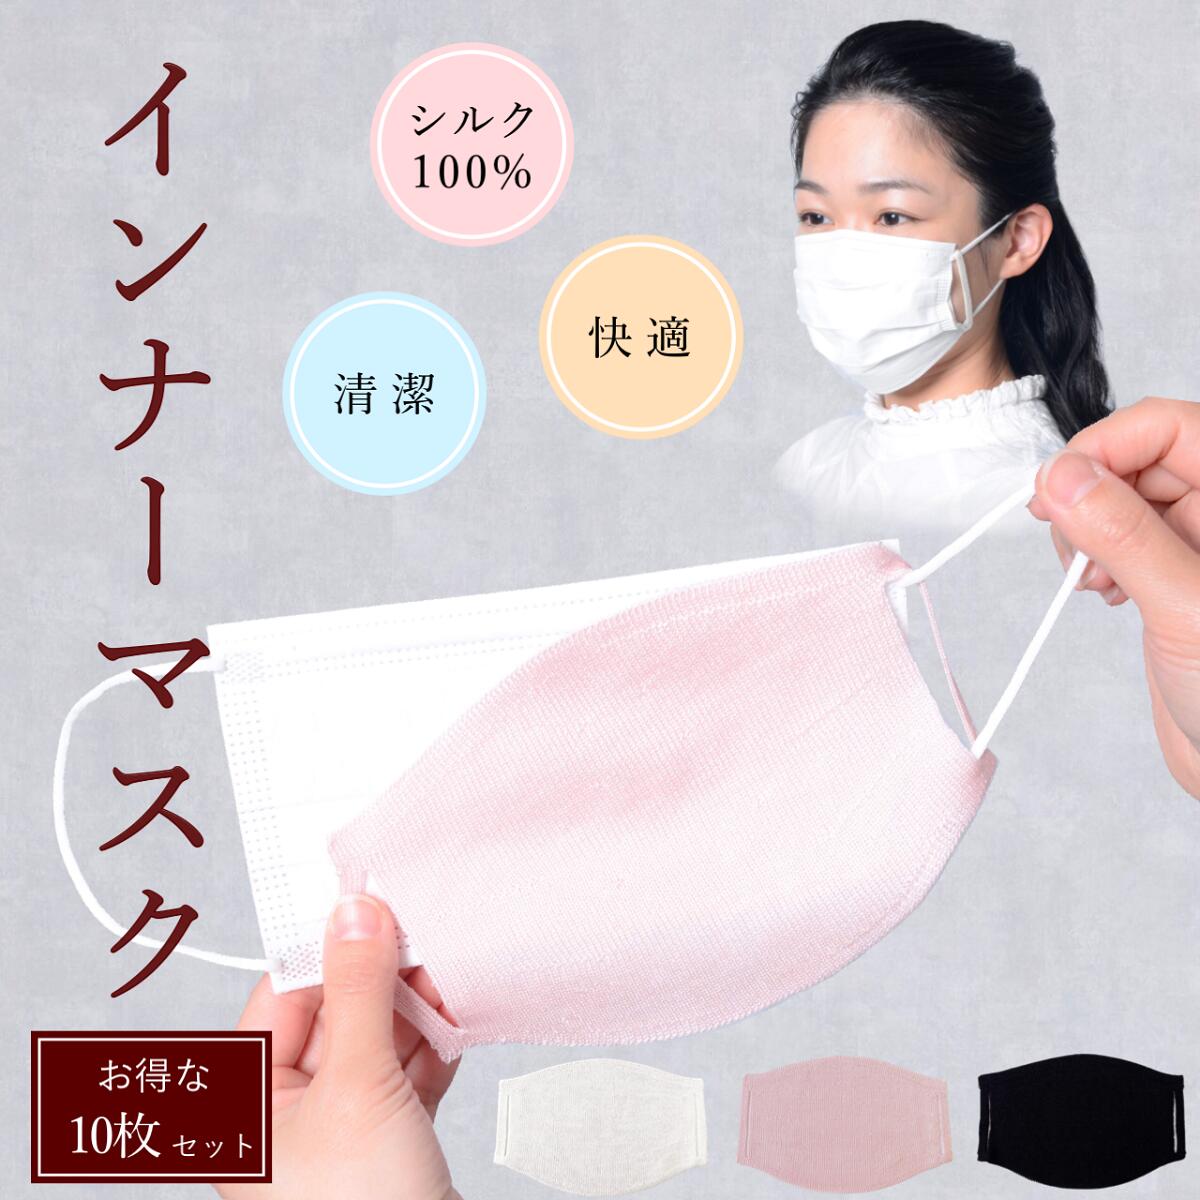 シルク 100% 10枚 16% オトク お得 洗える インナー マスク 日本製 水洗い 保湿 乾燥 シート シルクマスク フィルタ…